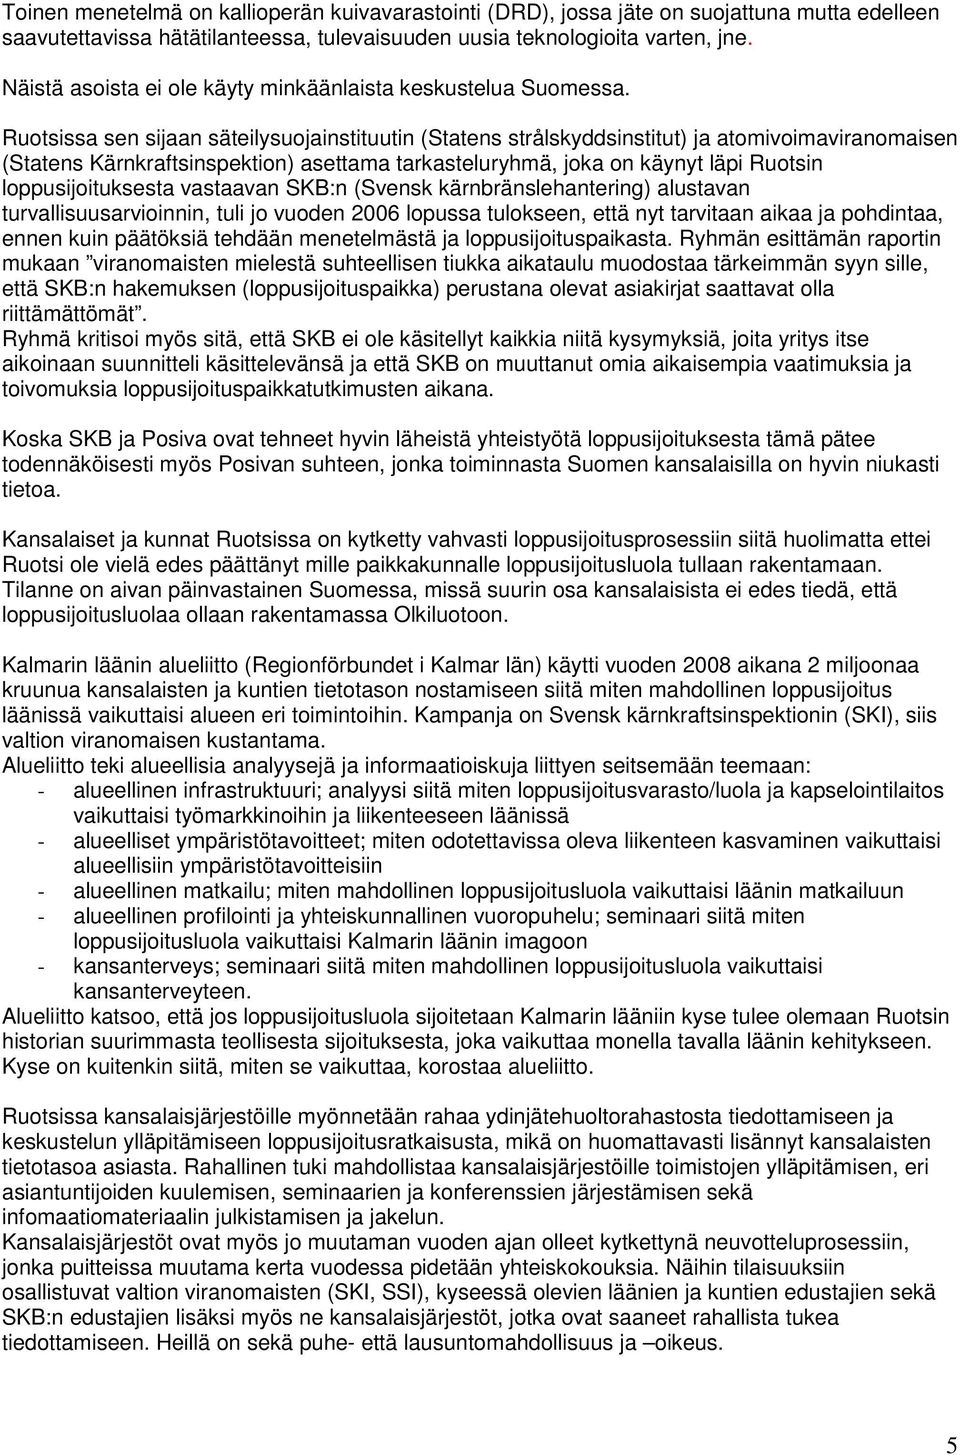 Ruotsissa sen sijaan säteilysuojainstituutin (Statens strålskyddsinstitut) ja atomivoimaviranomaisen (Statens Kärnkraftsinspektion) asettama tarkasteluryhmä, joka on käynyt läpi Ruotsin